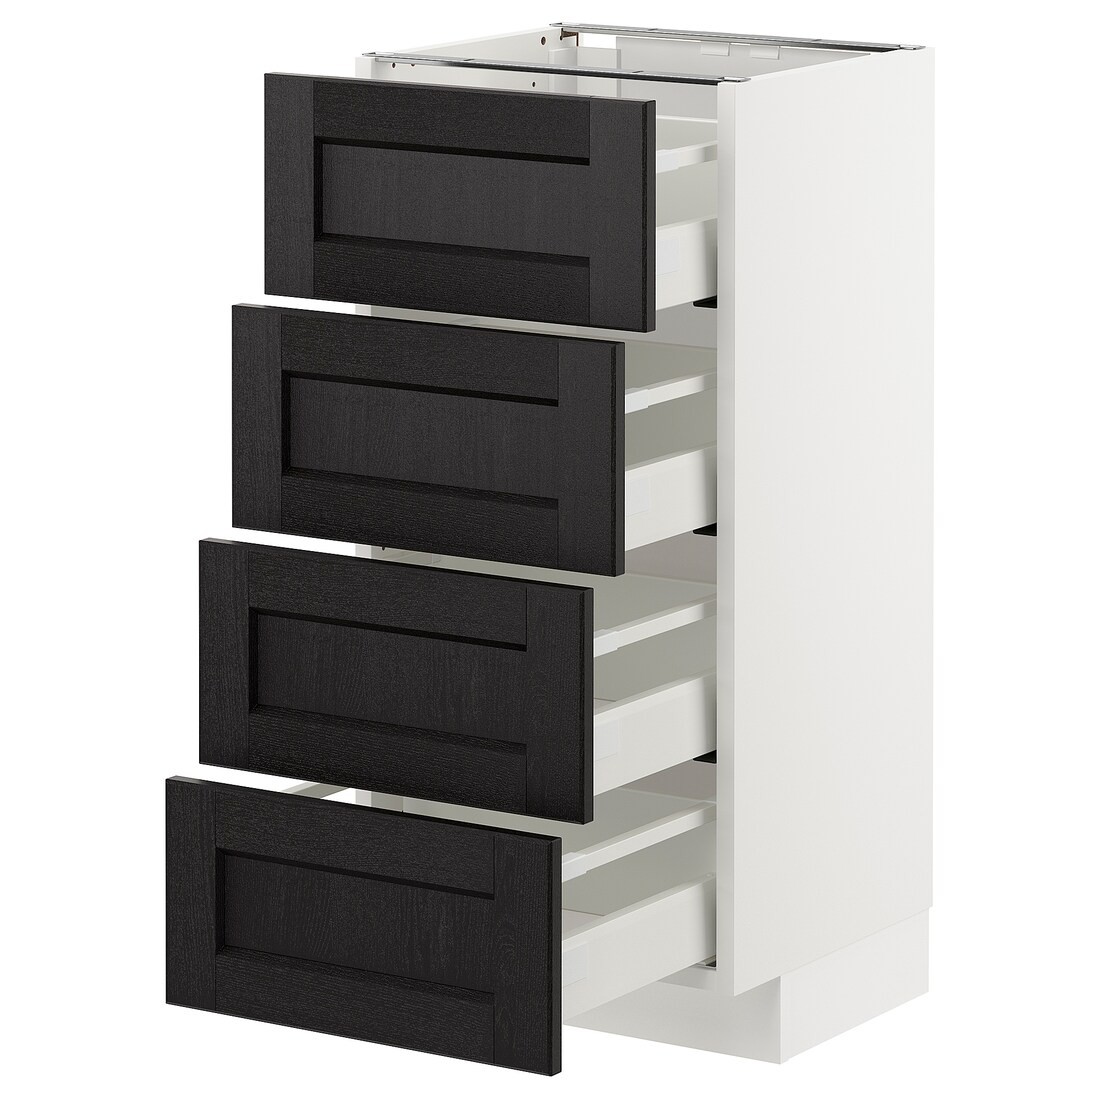 IKEA METOD МЕТОД / MAXIMERA МАКСИМЕРА Напольный шкаф с ящиками, белый / Lerhyttan черная морилка, 40x37 см 99256799 992.567.99